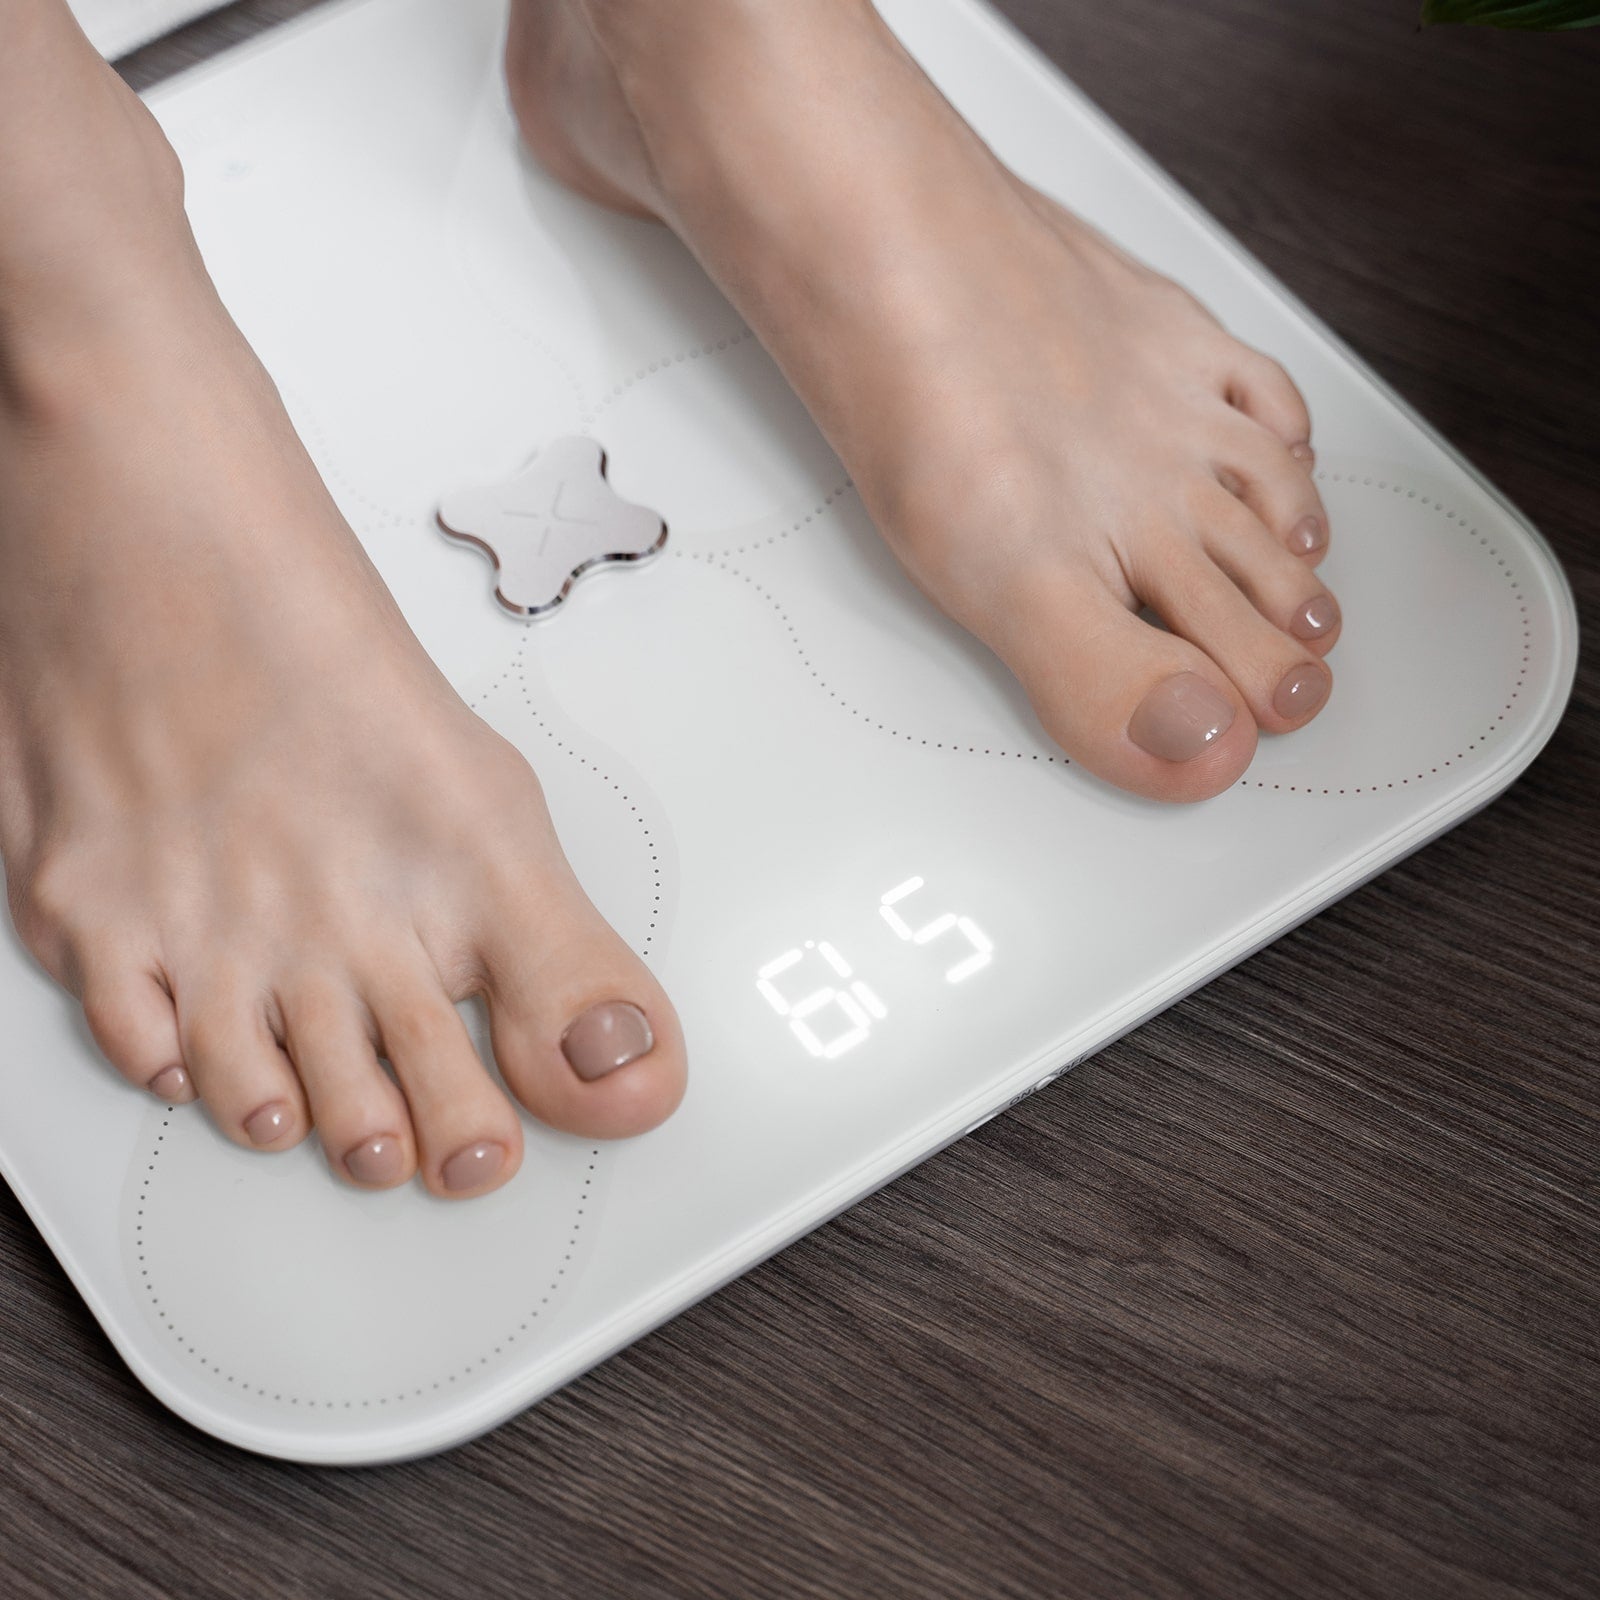 PICOOC S3 WIFI Smart Body Fat Scale PICOOC